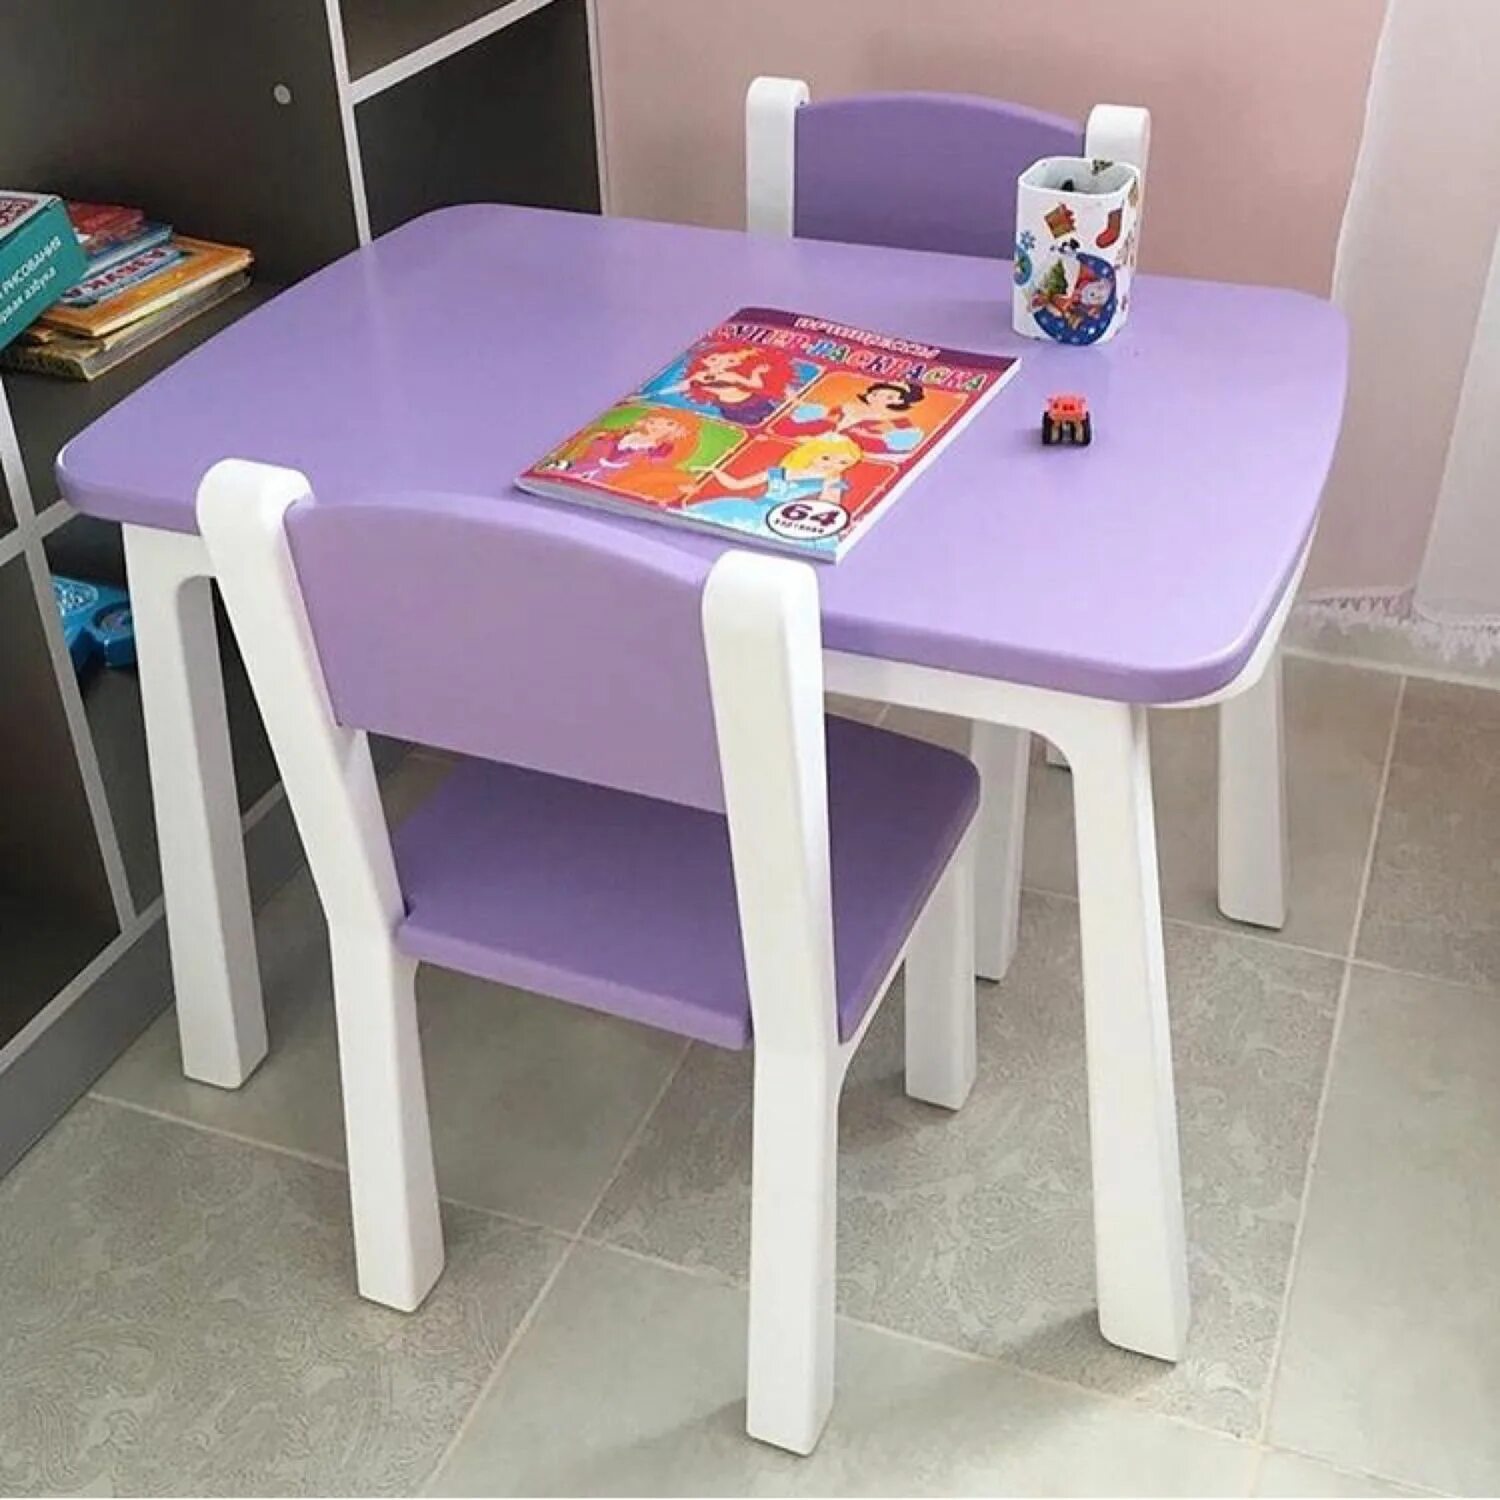 Детские столы спб. Комплект мебели(стол+2стула) hy012. Комплект kidkraft стол + 2 стула Модерн. Стол детский. Столик и стульчик для детей.